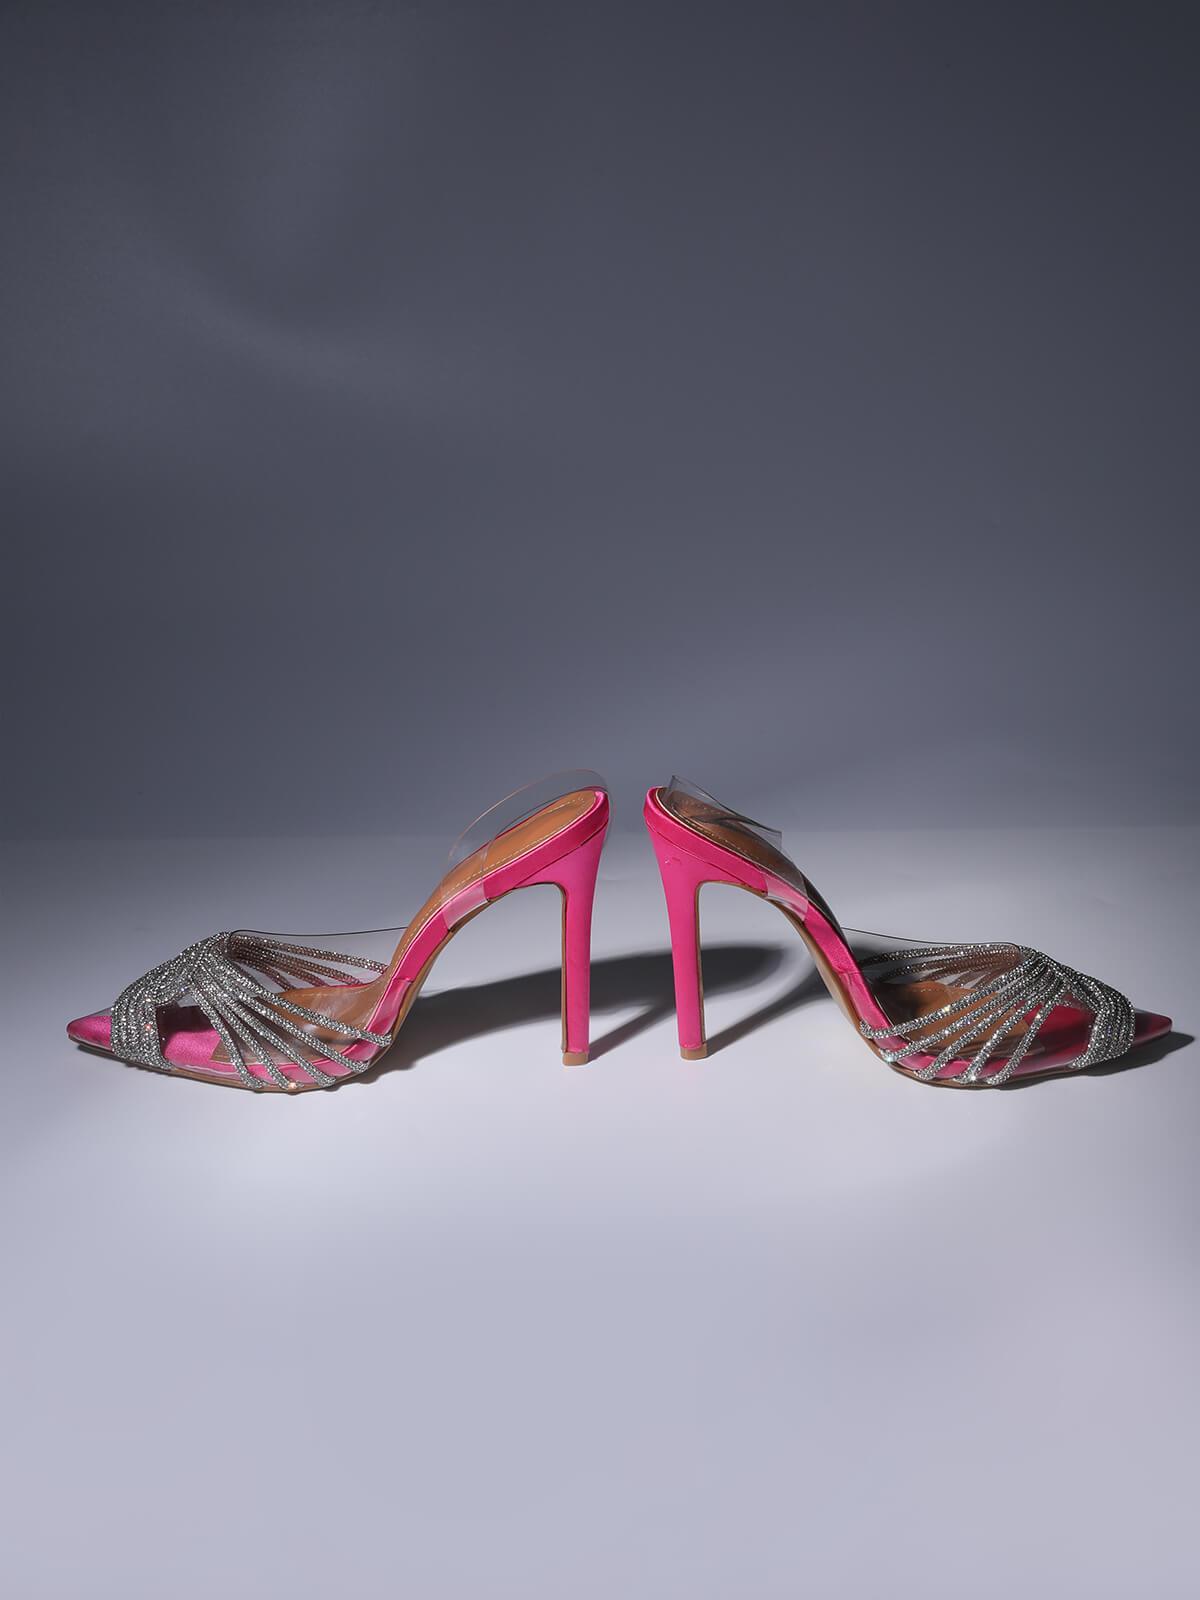 Crystal EmbelliShed SandALS In Hot Pink